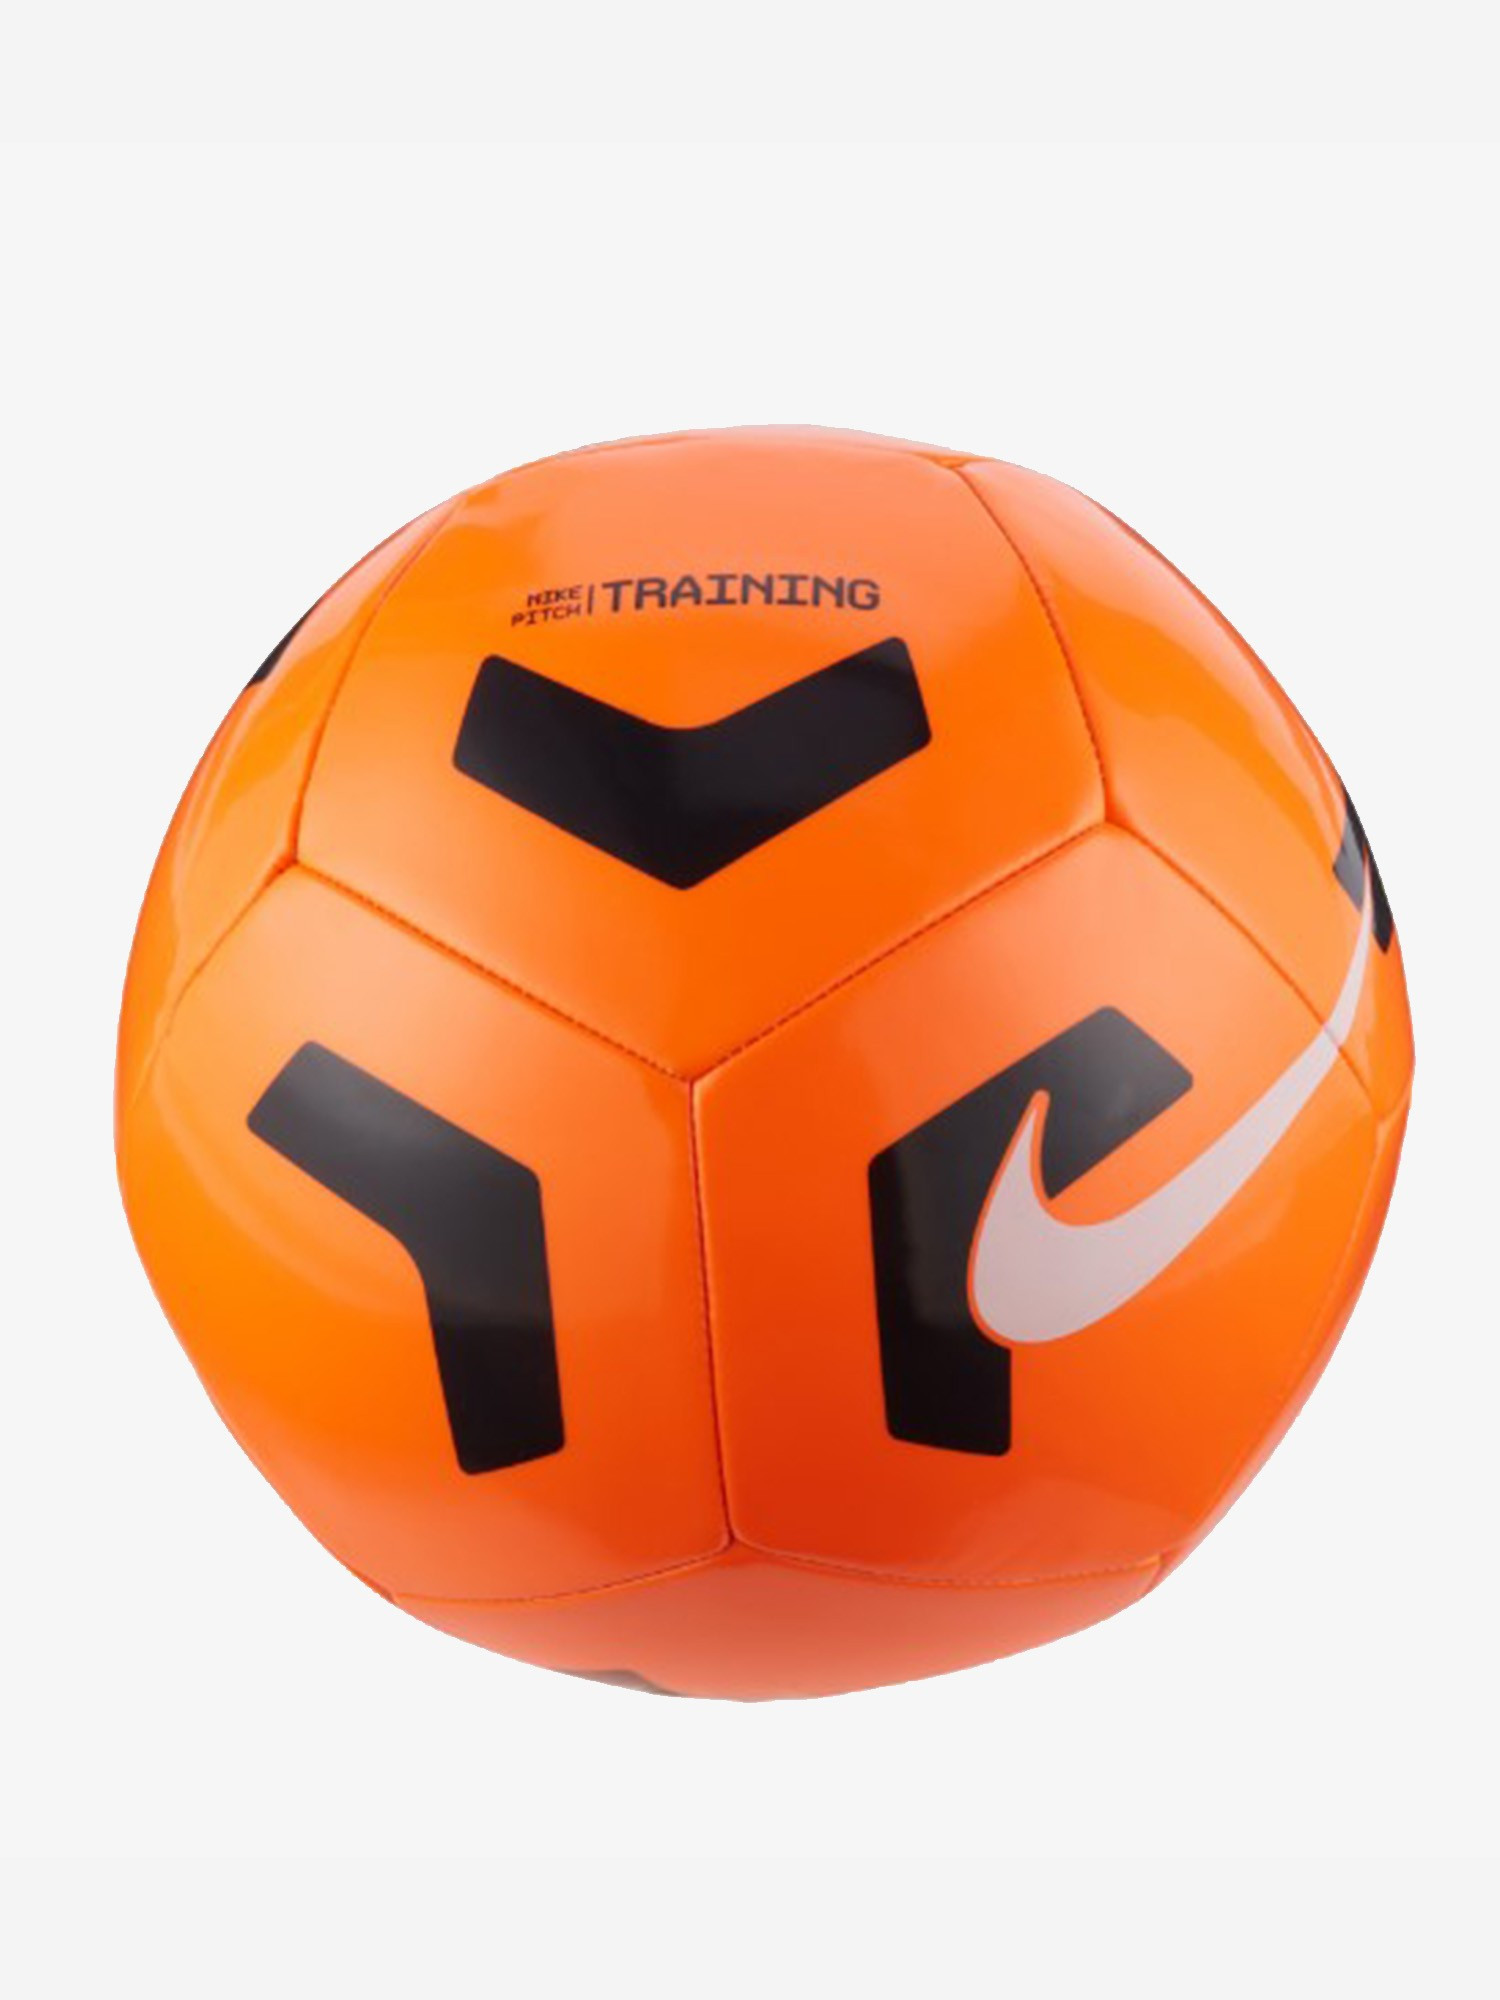 М'яч футбольний Nike Pitch Training